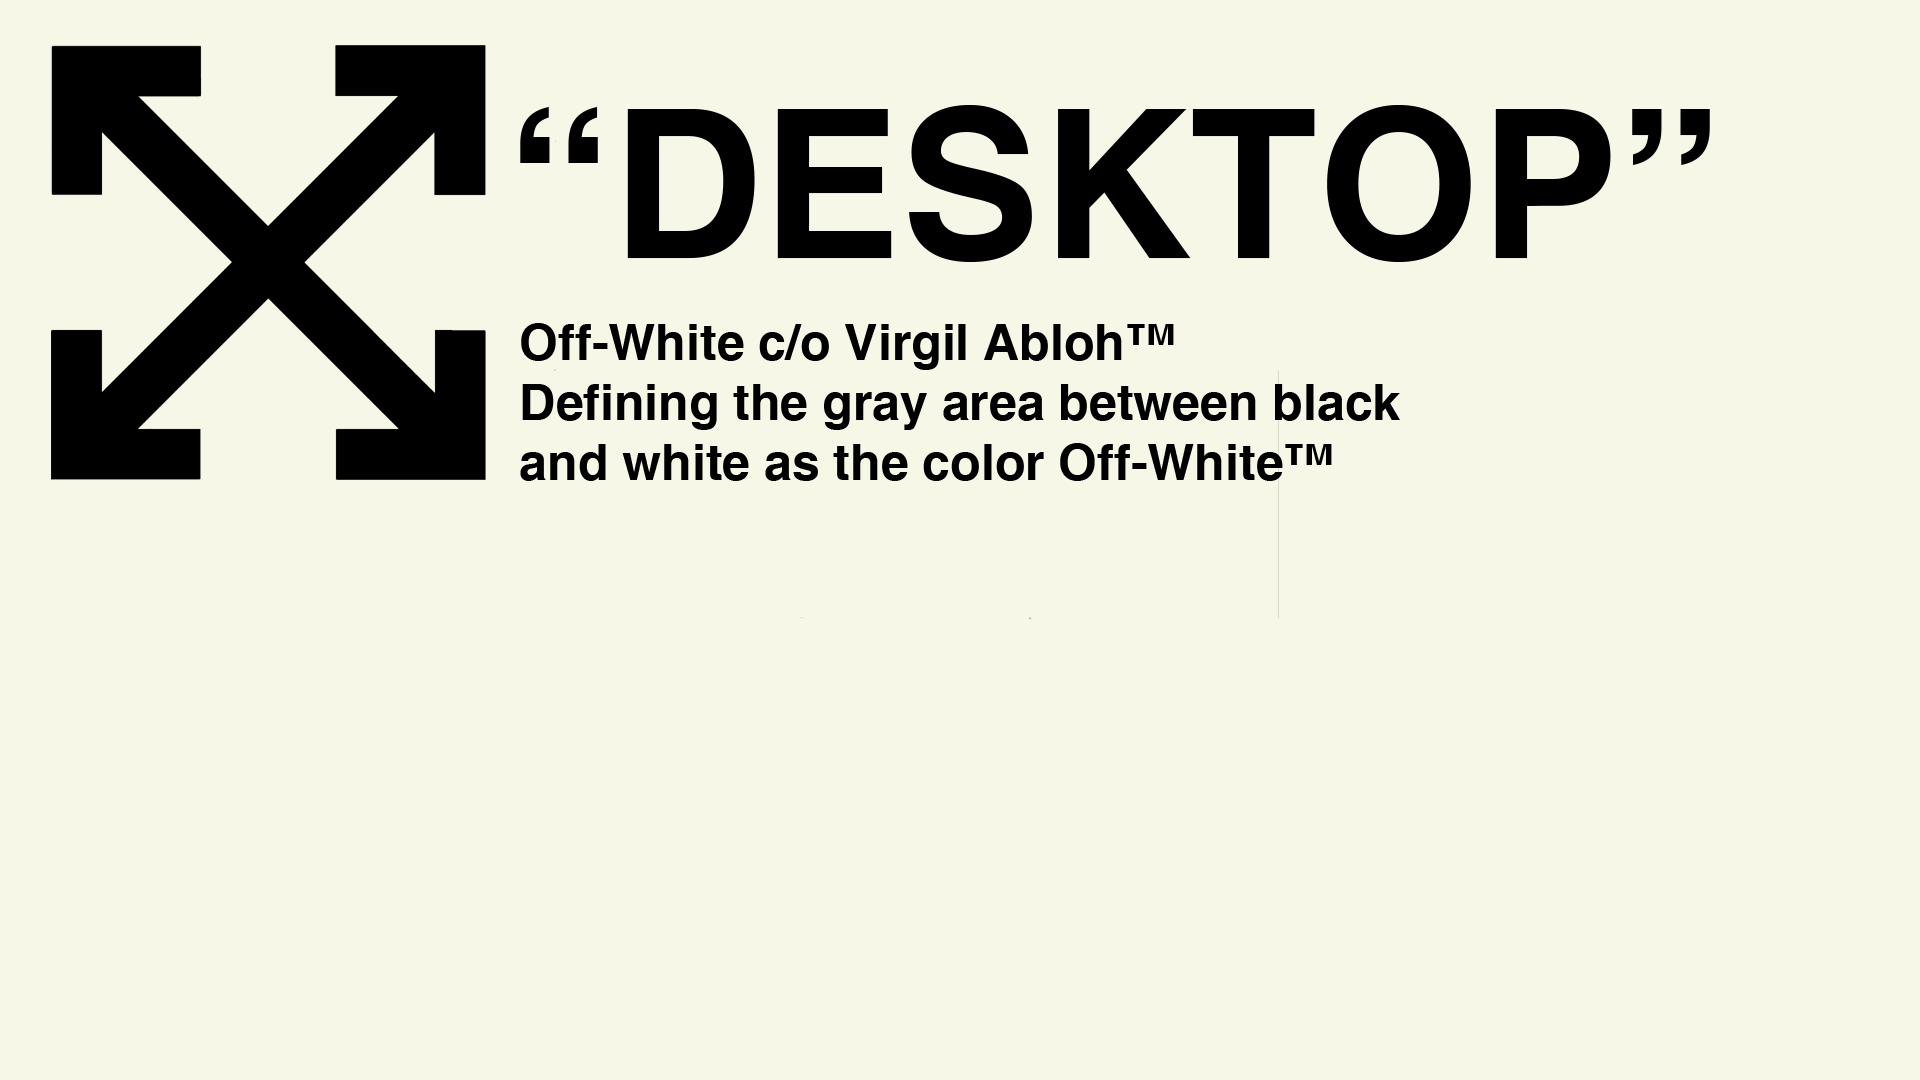 An Album Of A Bunch Of Off White Desktop Wallpaper, All Made